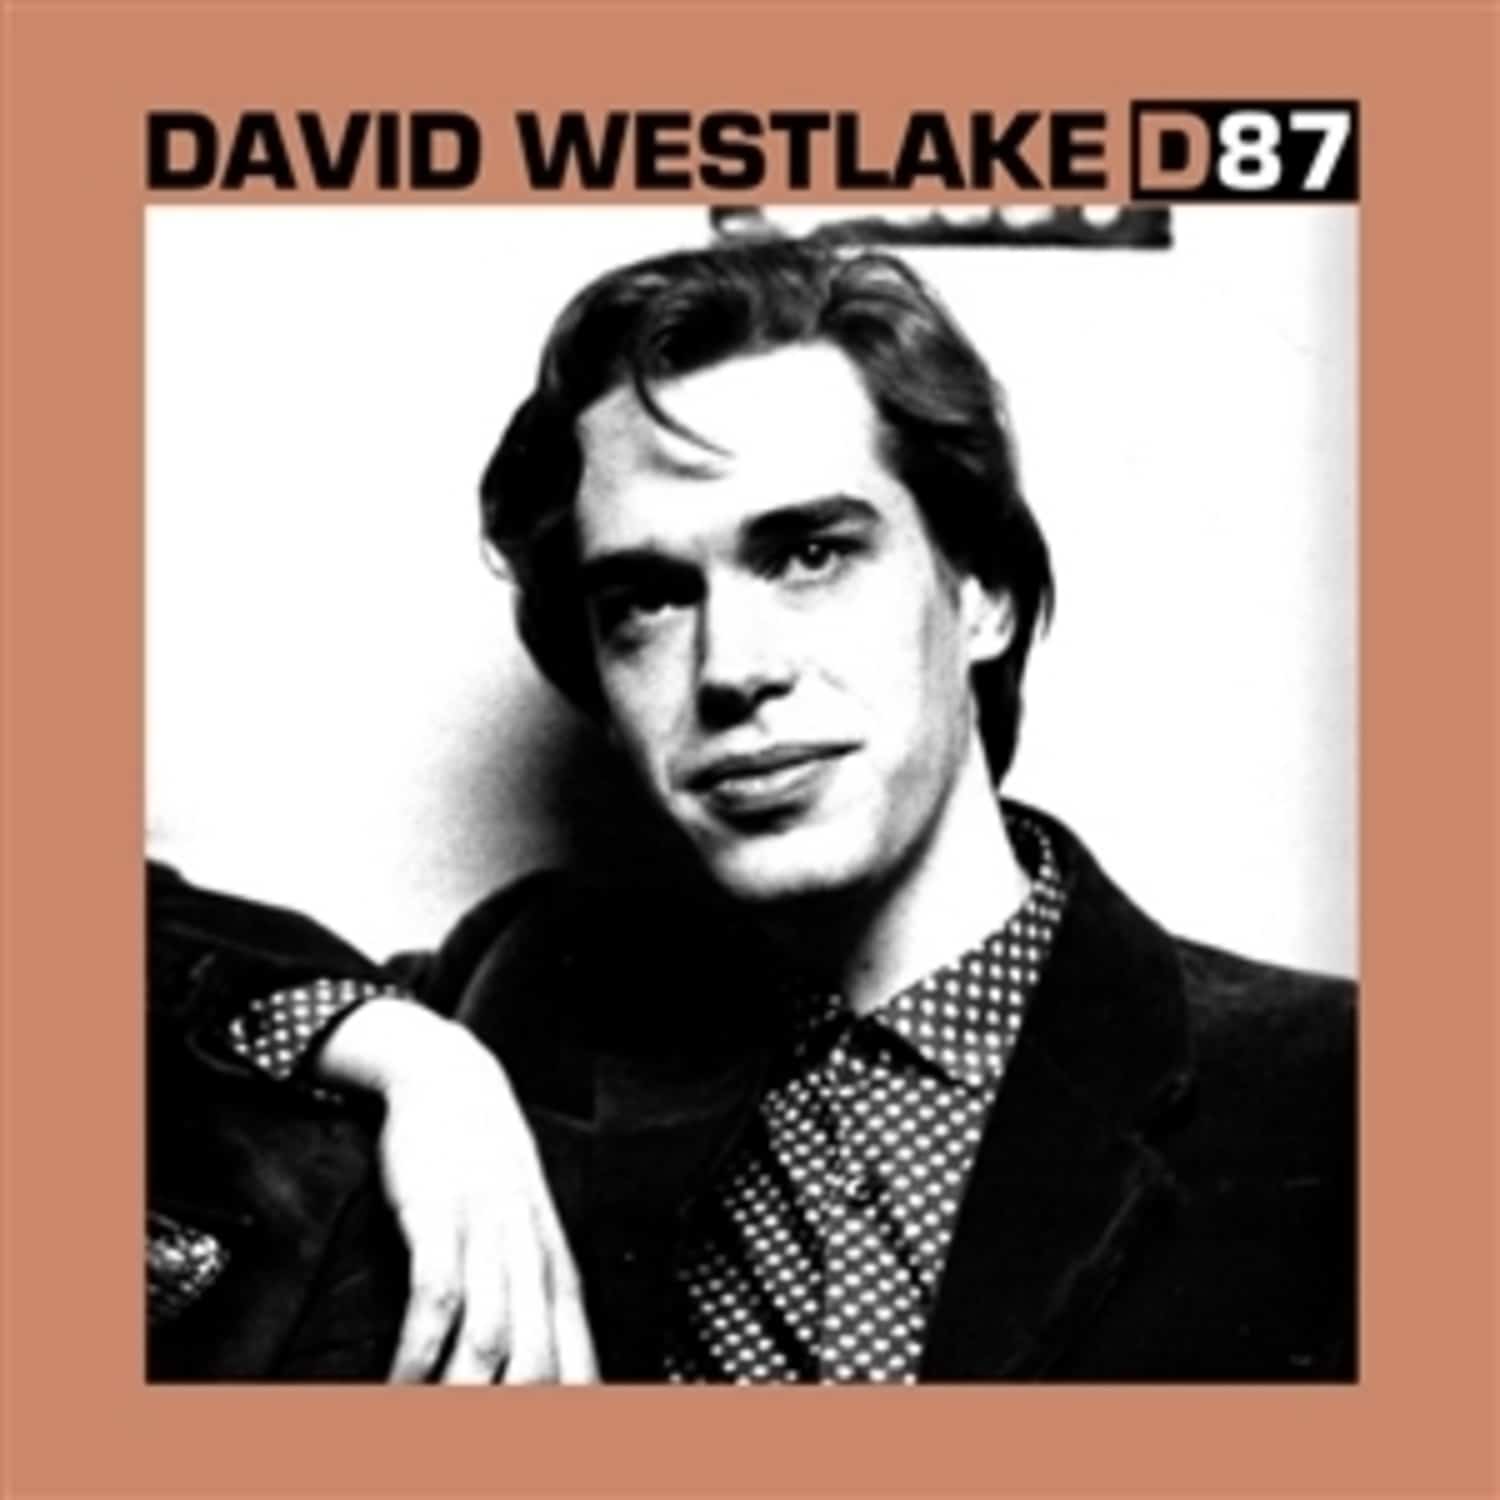 David Westlake - D87 